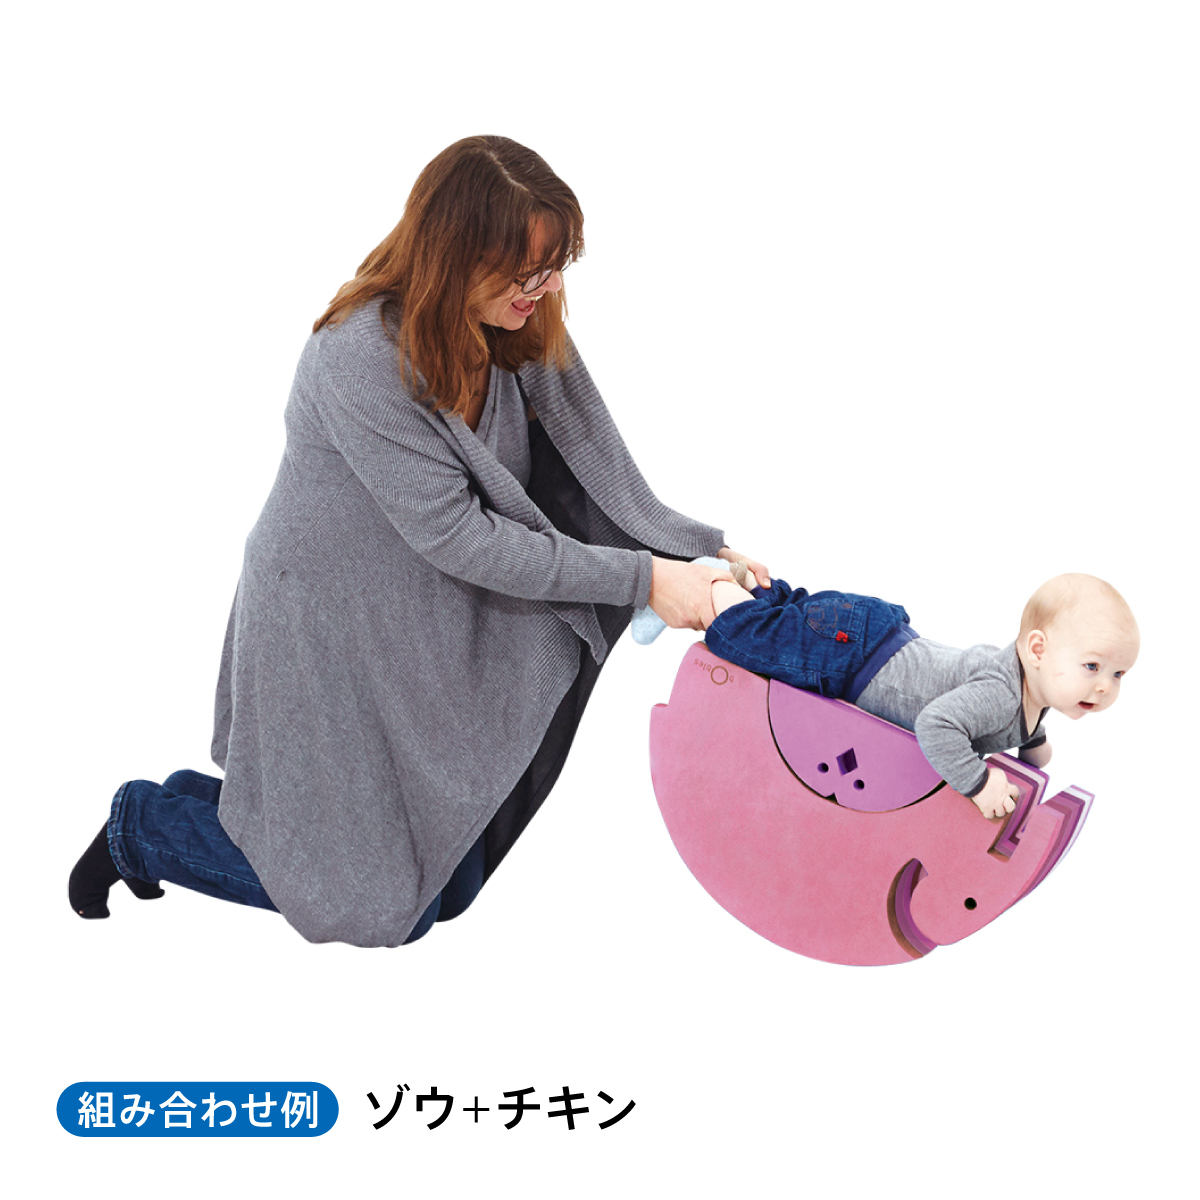 【赤ちゃんイベント】ボブルス体験会